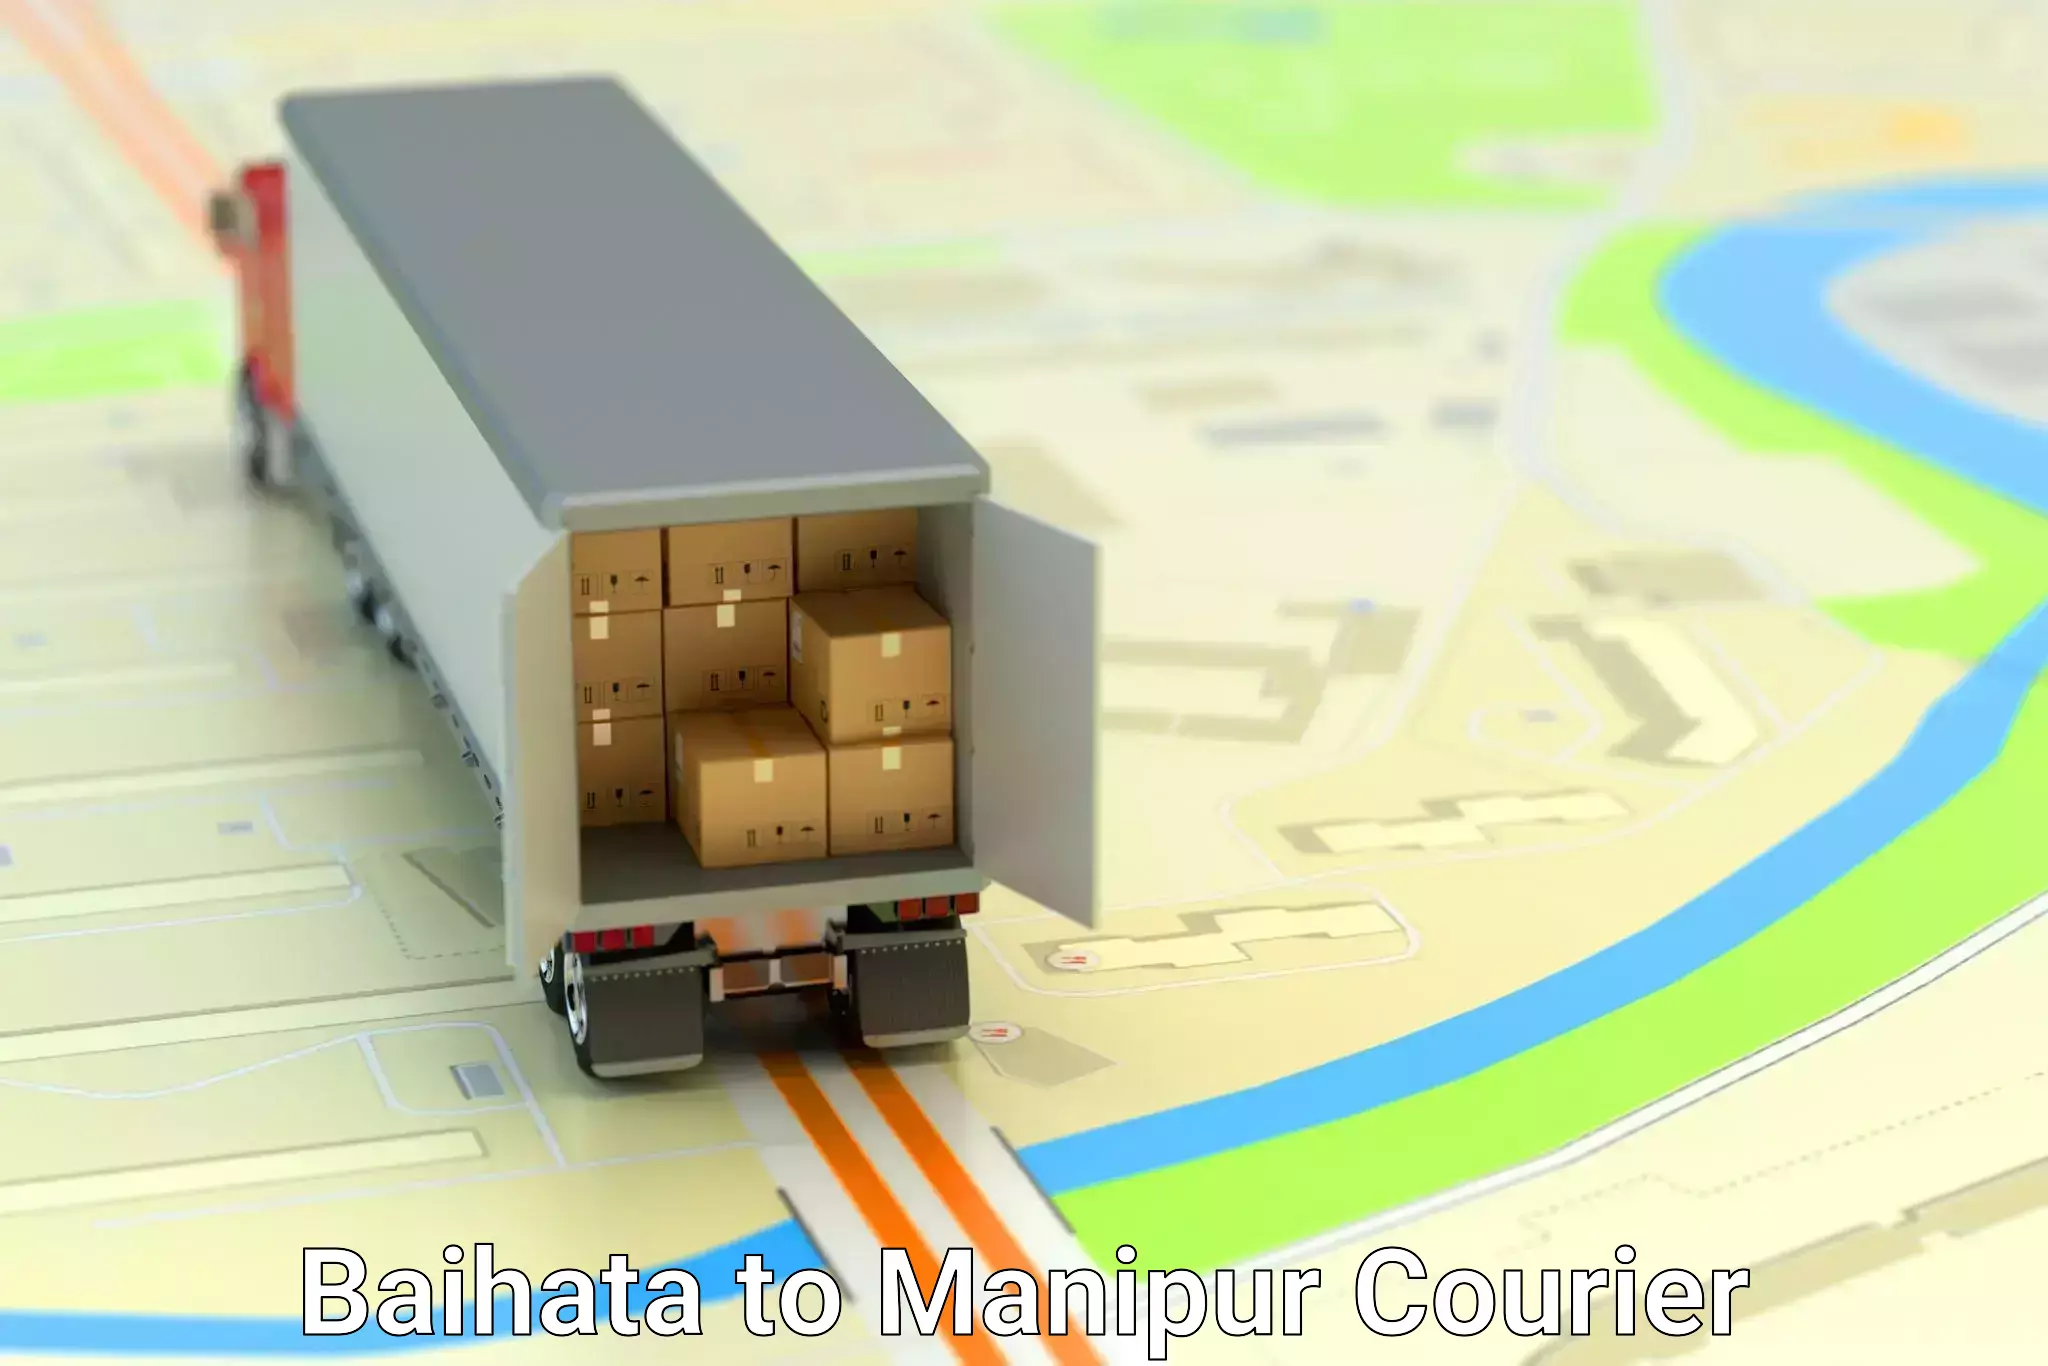 Courier service comparison Baihata to Moirang